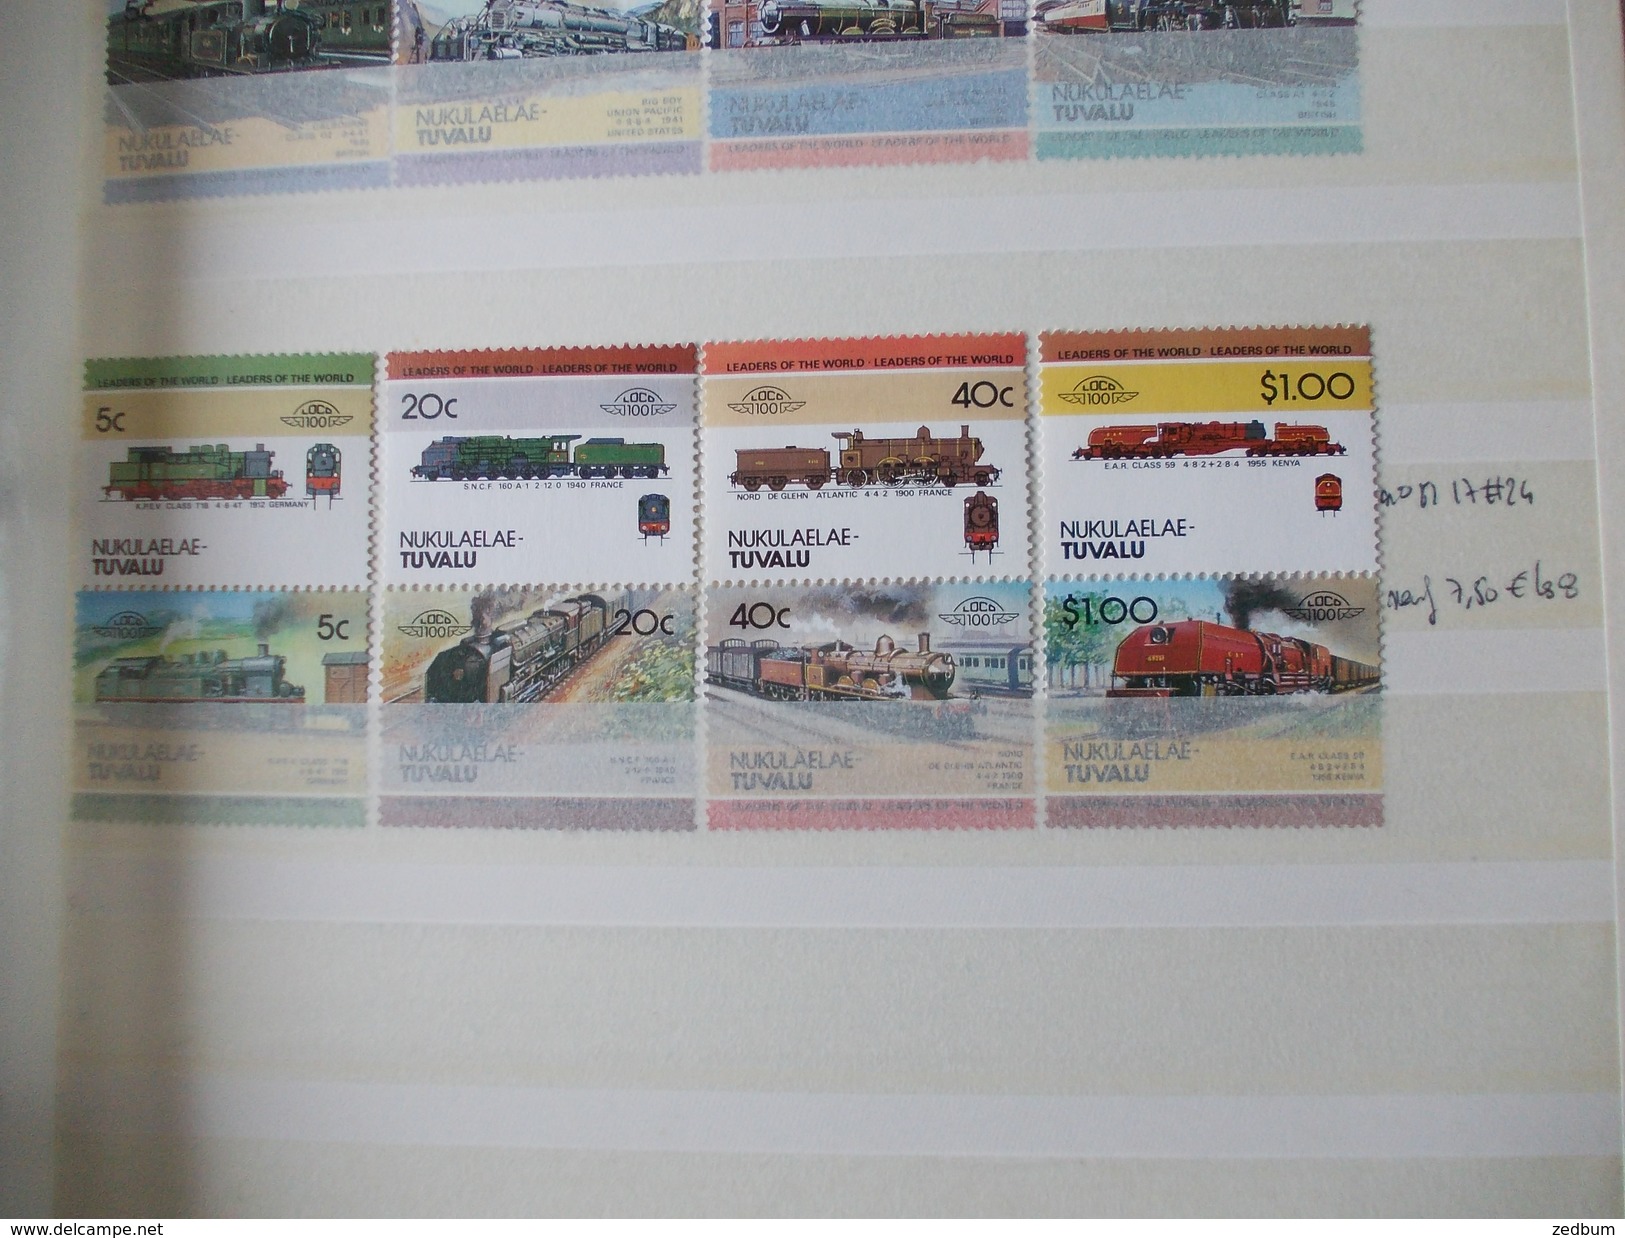 ALBUM 10 collection de timbres avec pour thème le chemin de fer train de tout pays valeur 377.40 &euro;